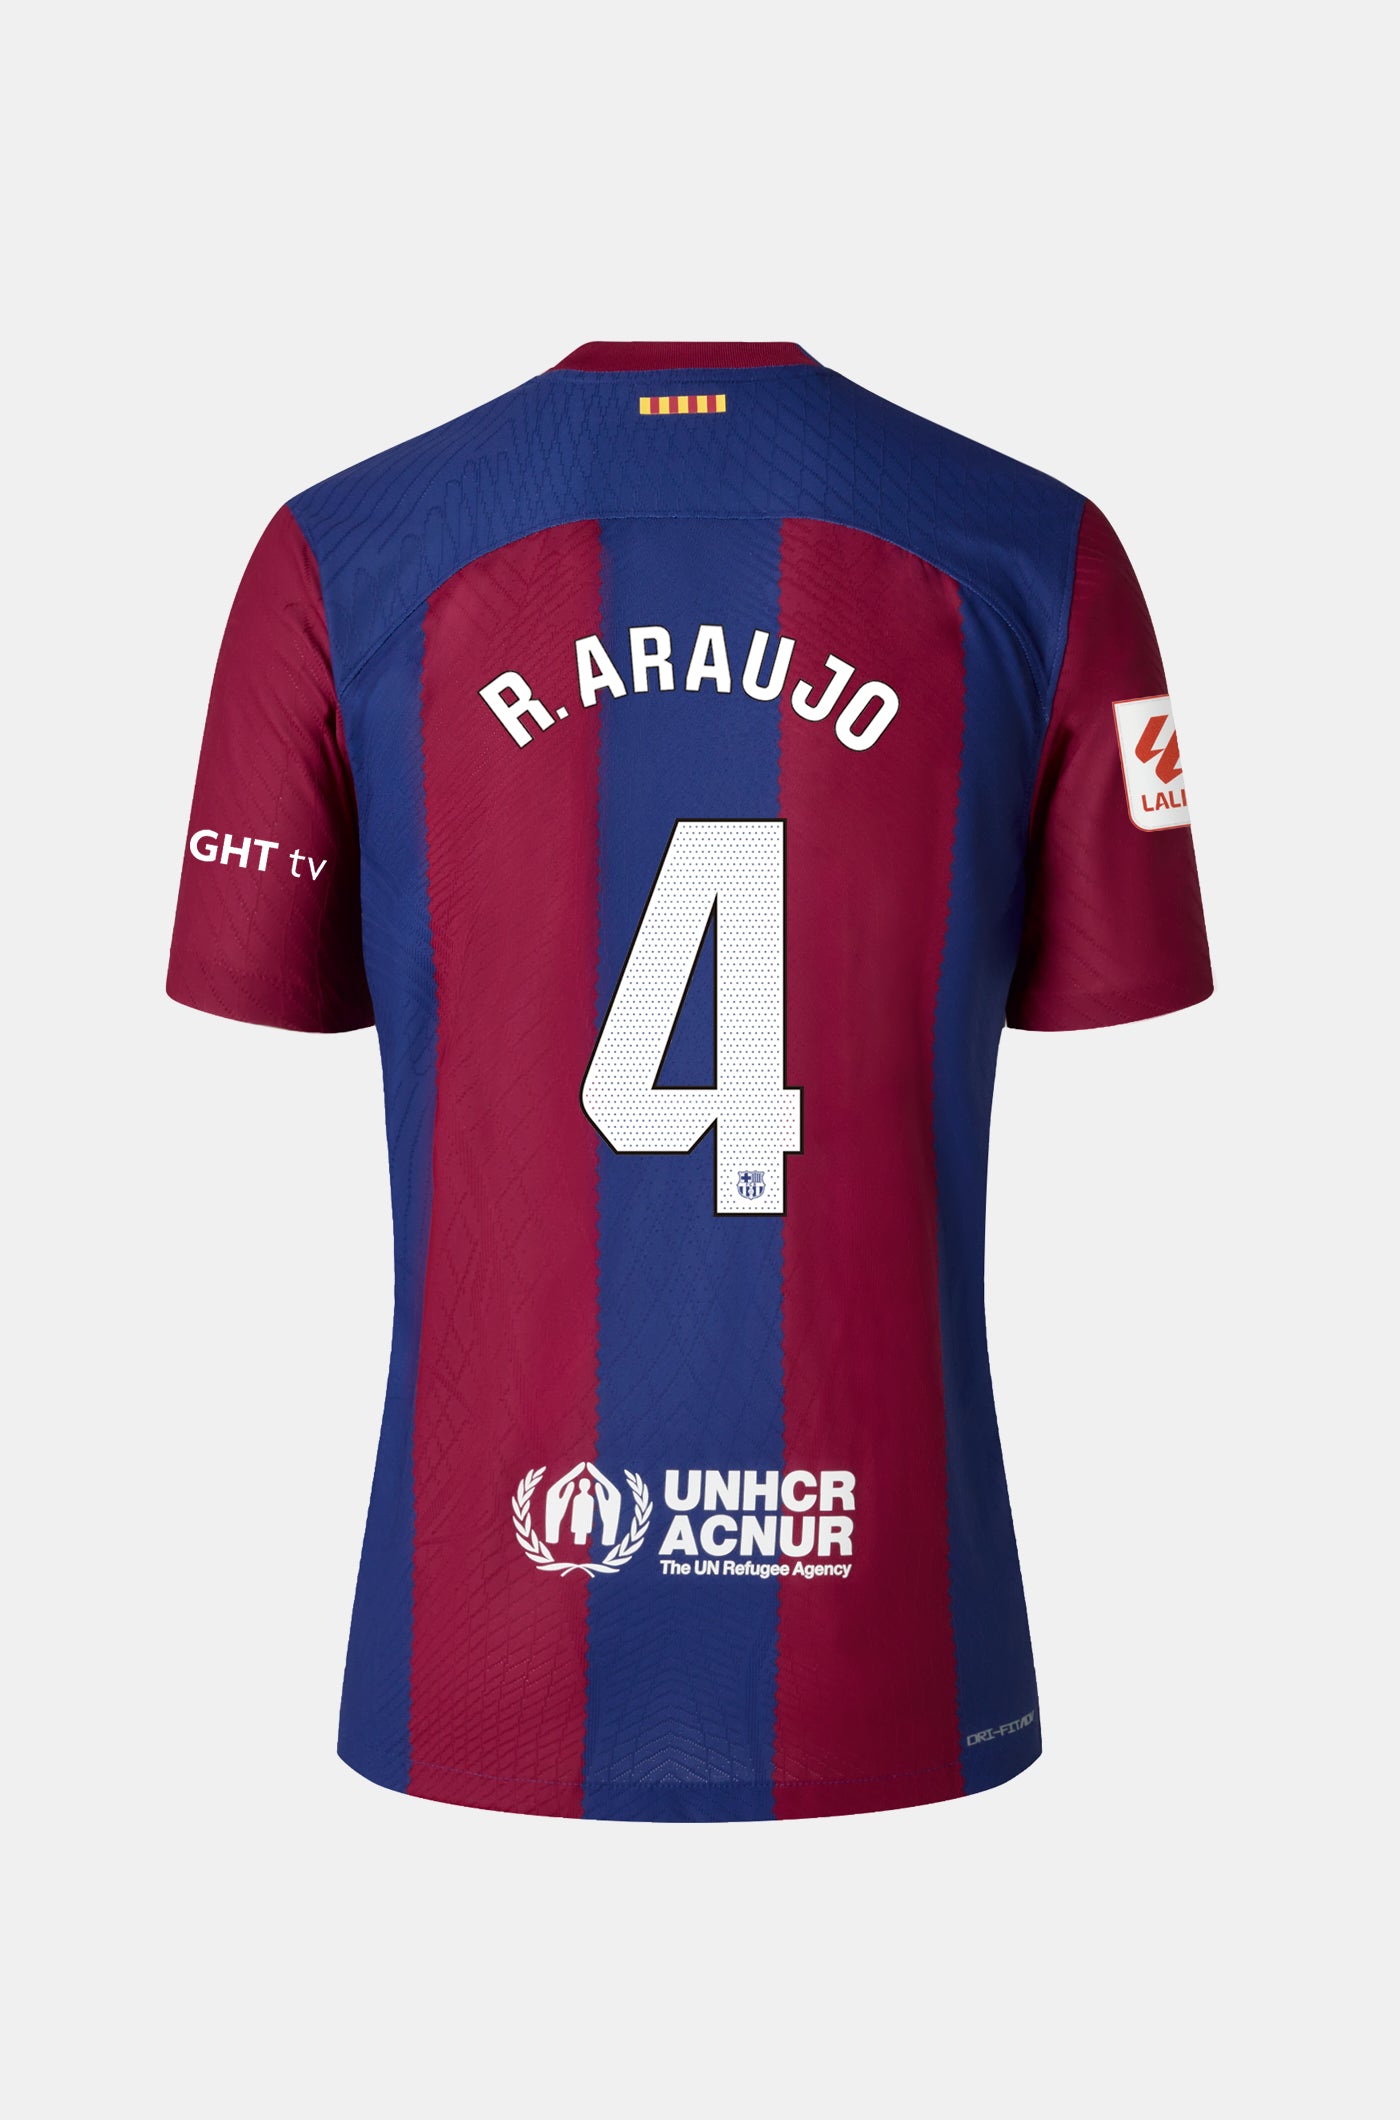 LFP Camiseta primera equipación FC Barcelona 23/24 - Junior - R. ARAUJO